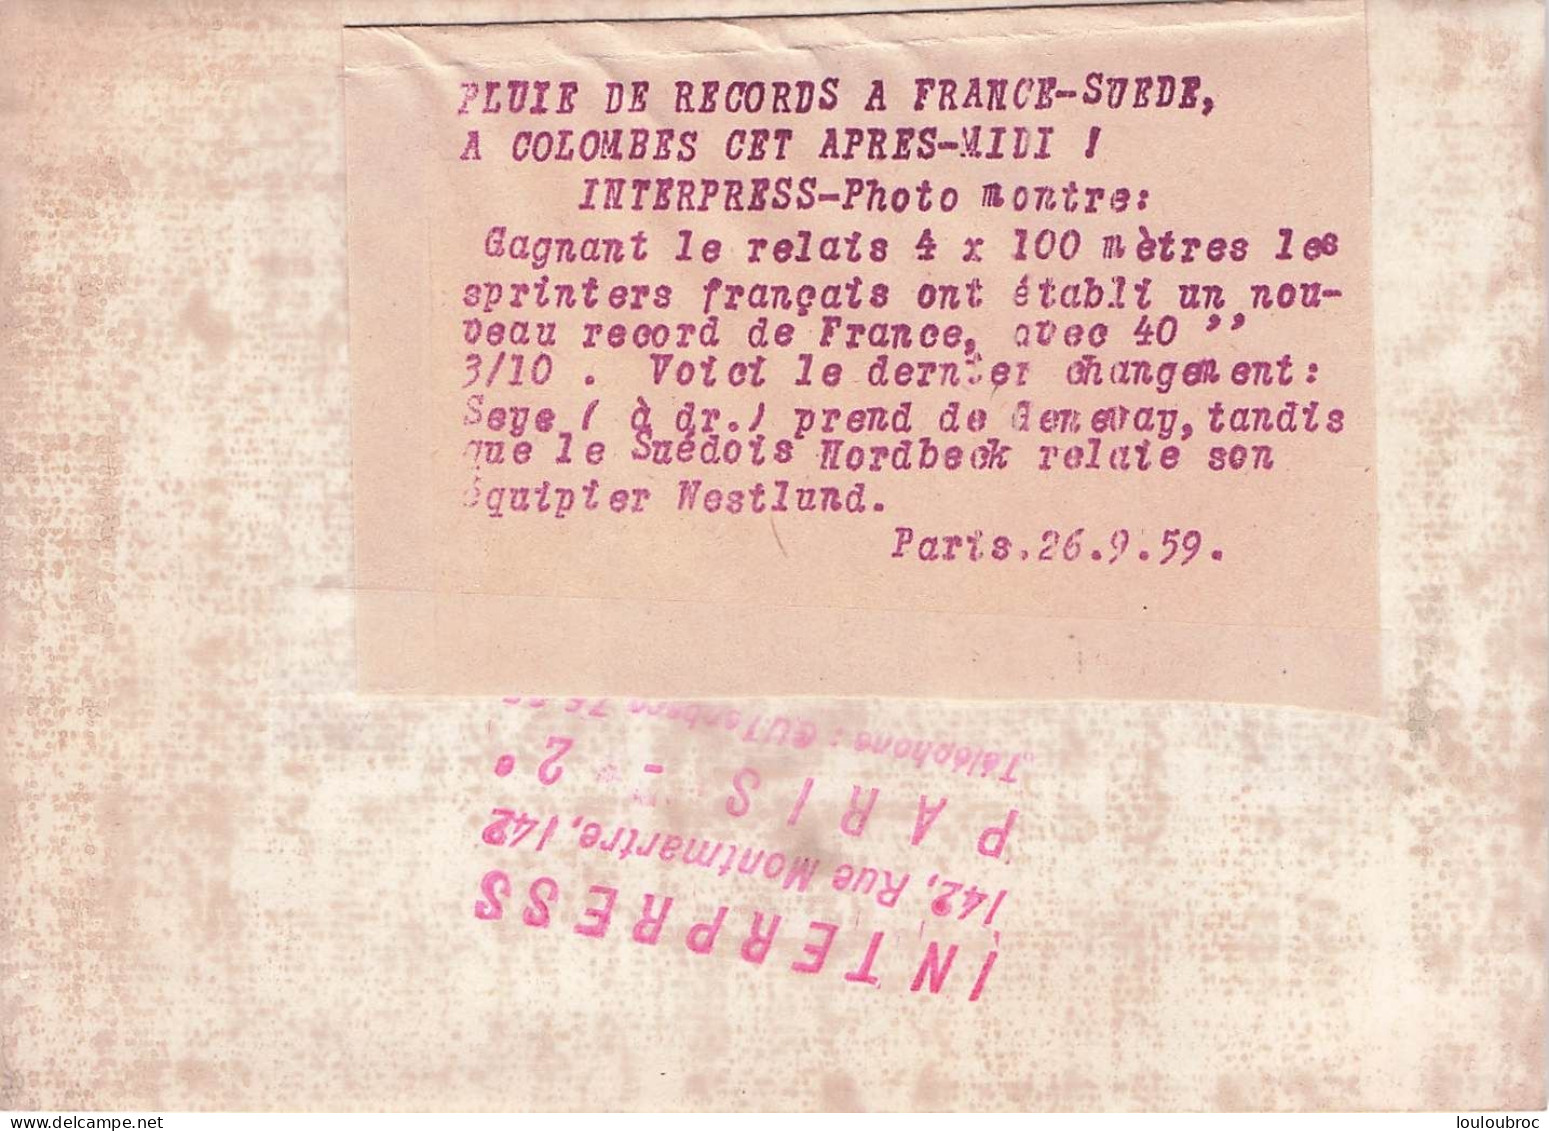 ATHLETISME 09/1959 FRANCE SUEDE A COLOMBES VICTOIRE DU 4X100 METRES PAR LES FRANCAIS PHOTO 18 X 13 CM - Sports